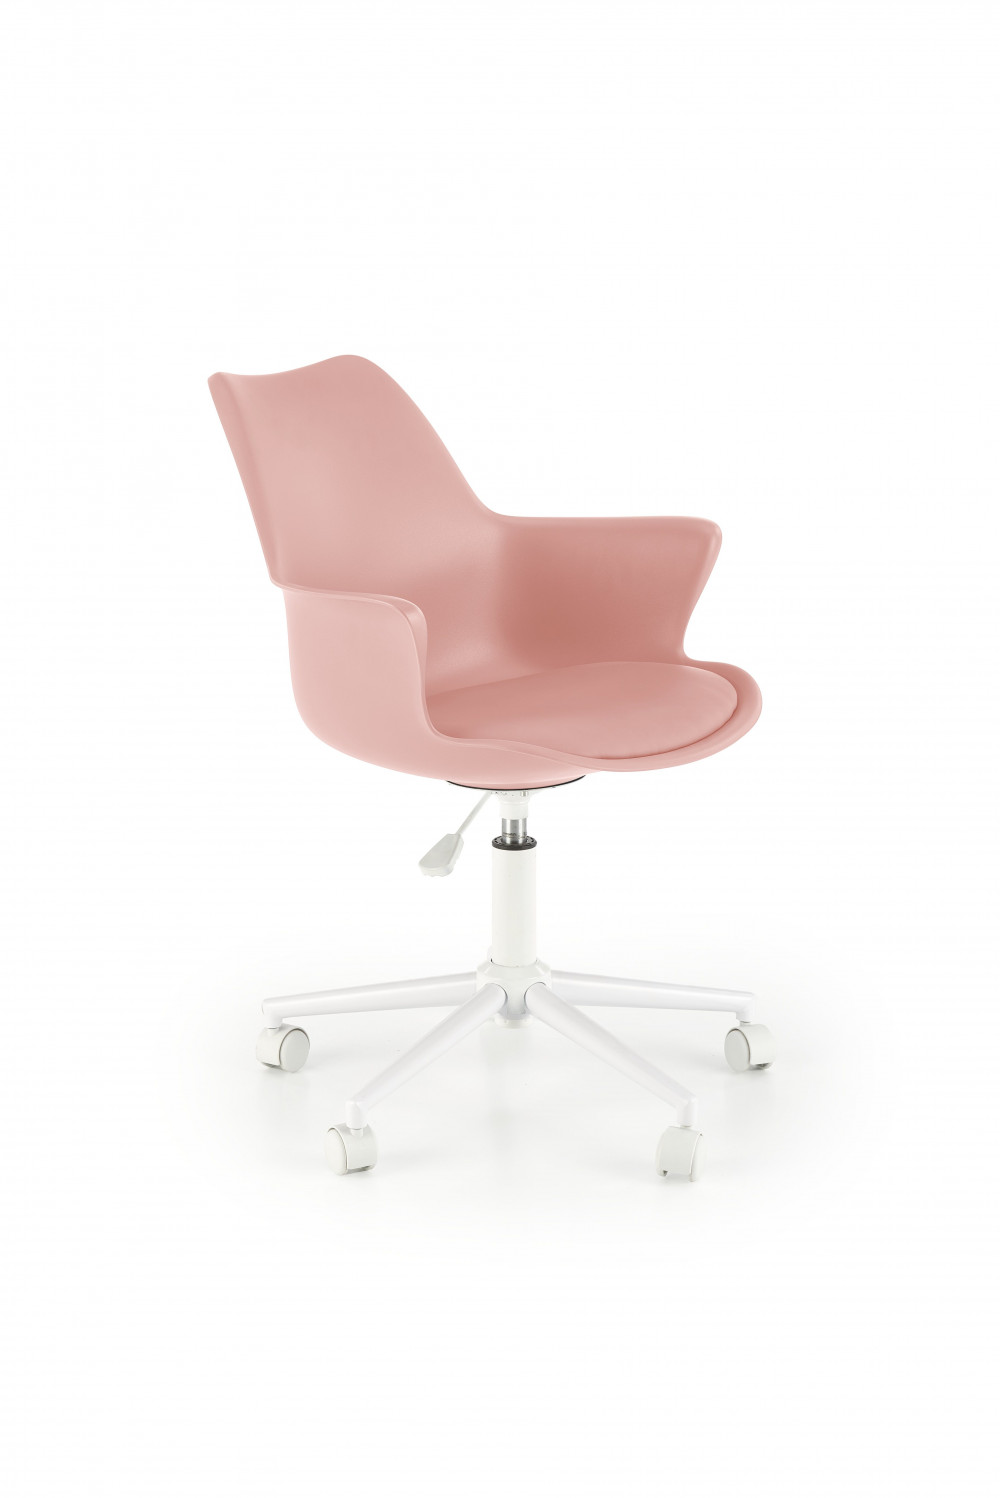 GA10 rózsaszín forgós ifjúsági fotel